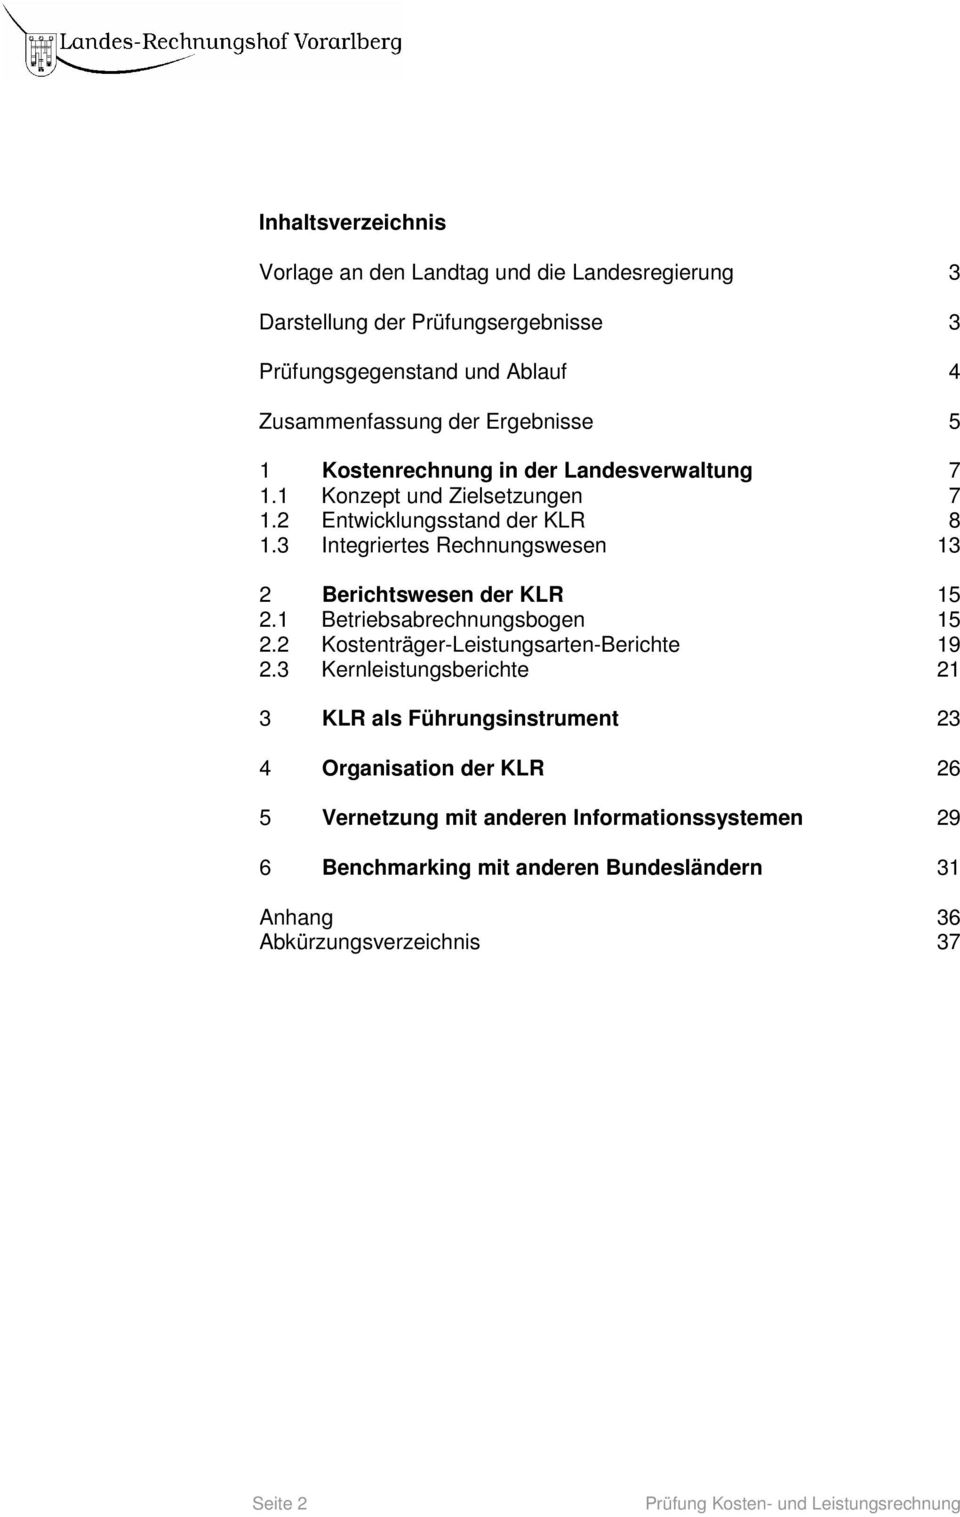 3 Integriertes Rechnungswesen 13 2 Berichtswesen der KLR 15 2.1 Betriebsabrechnungsbogen 15 2.2 Kostenträger-Leistungsarten-Berichte 19 2.